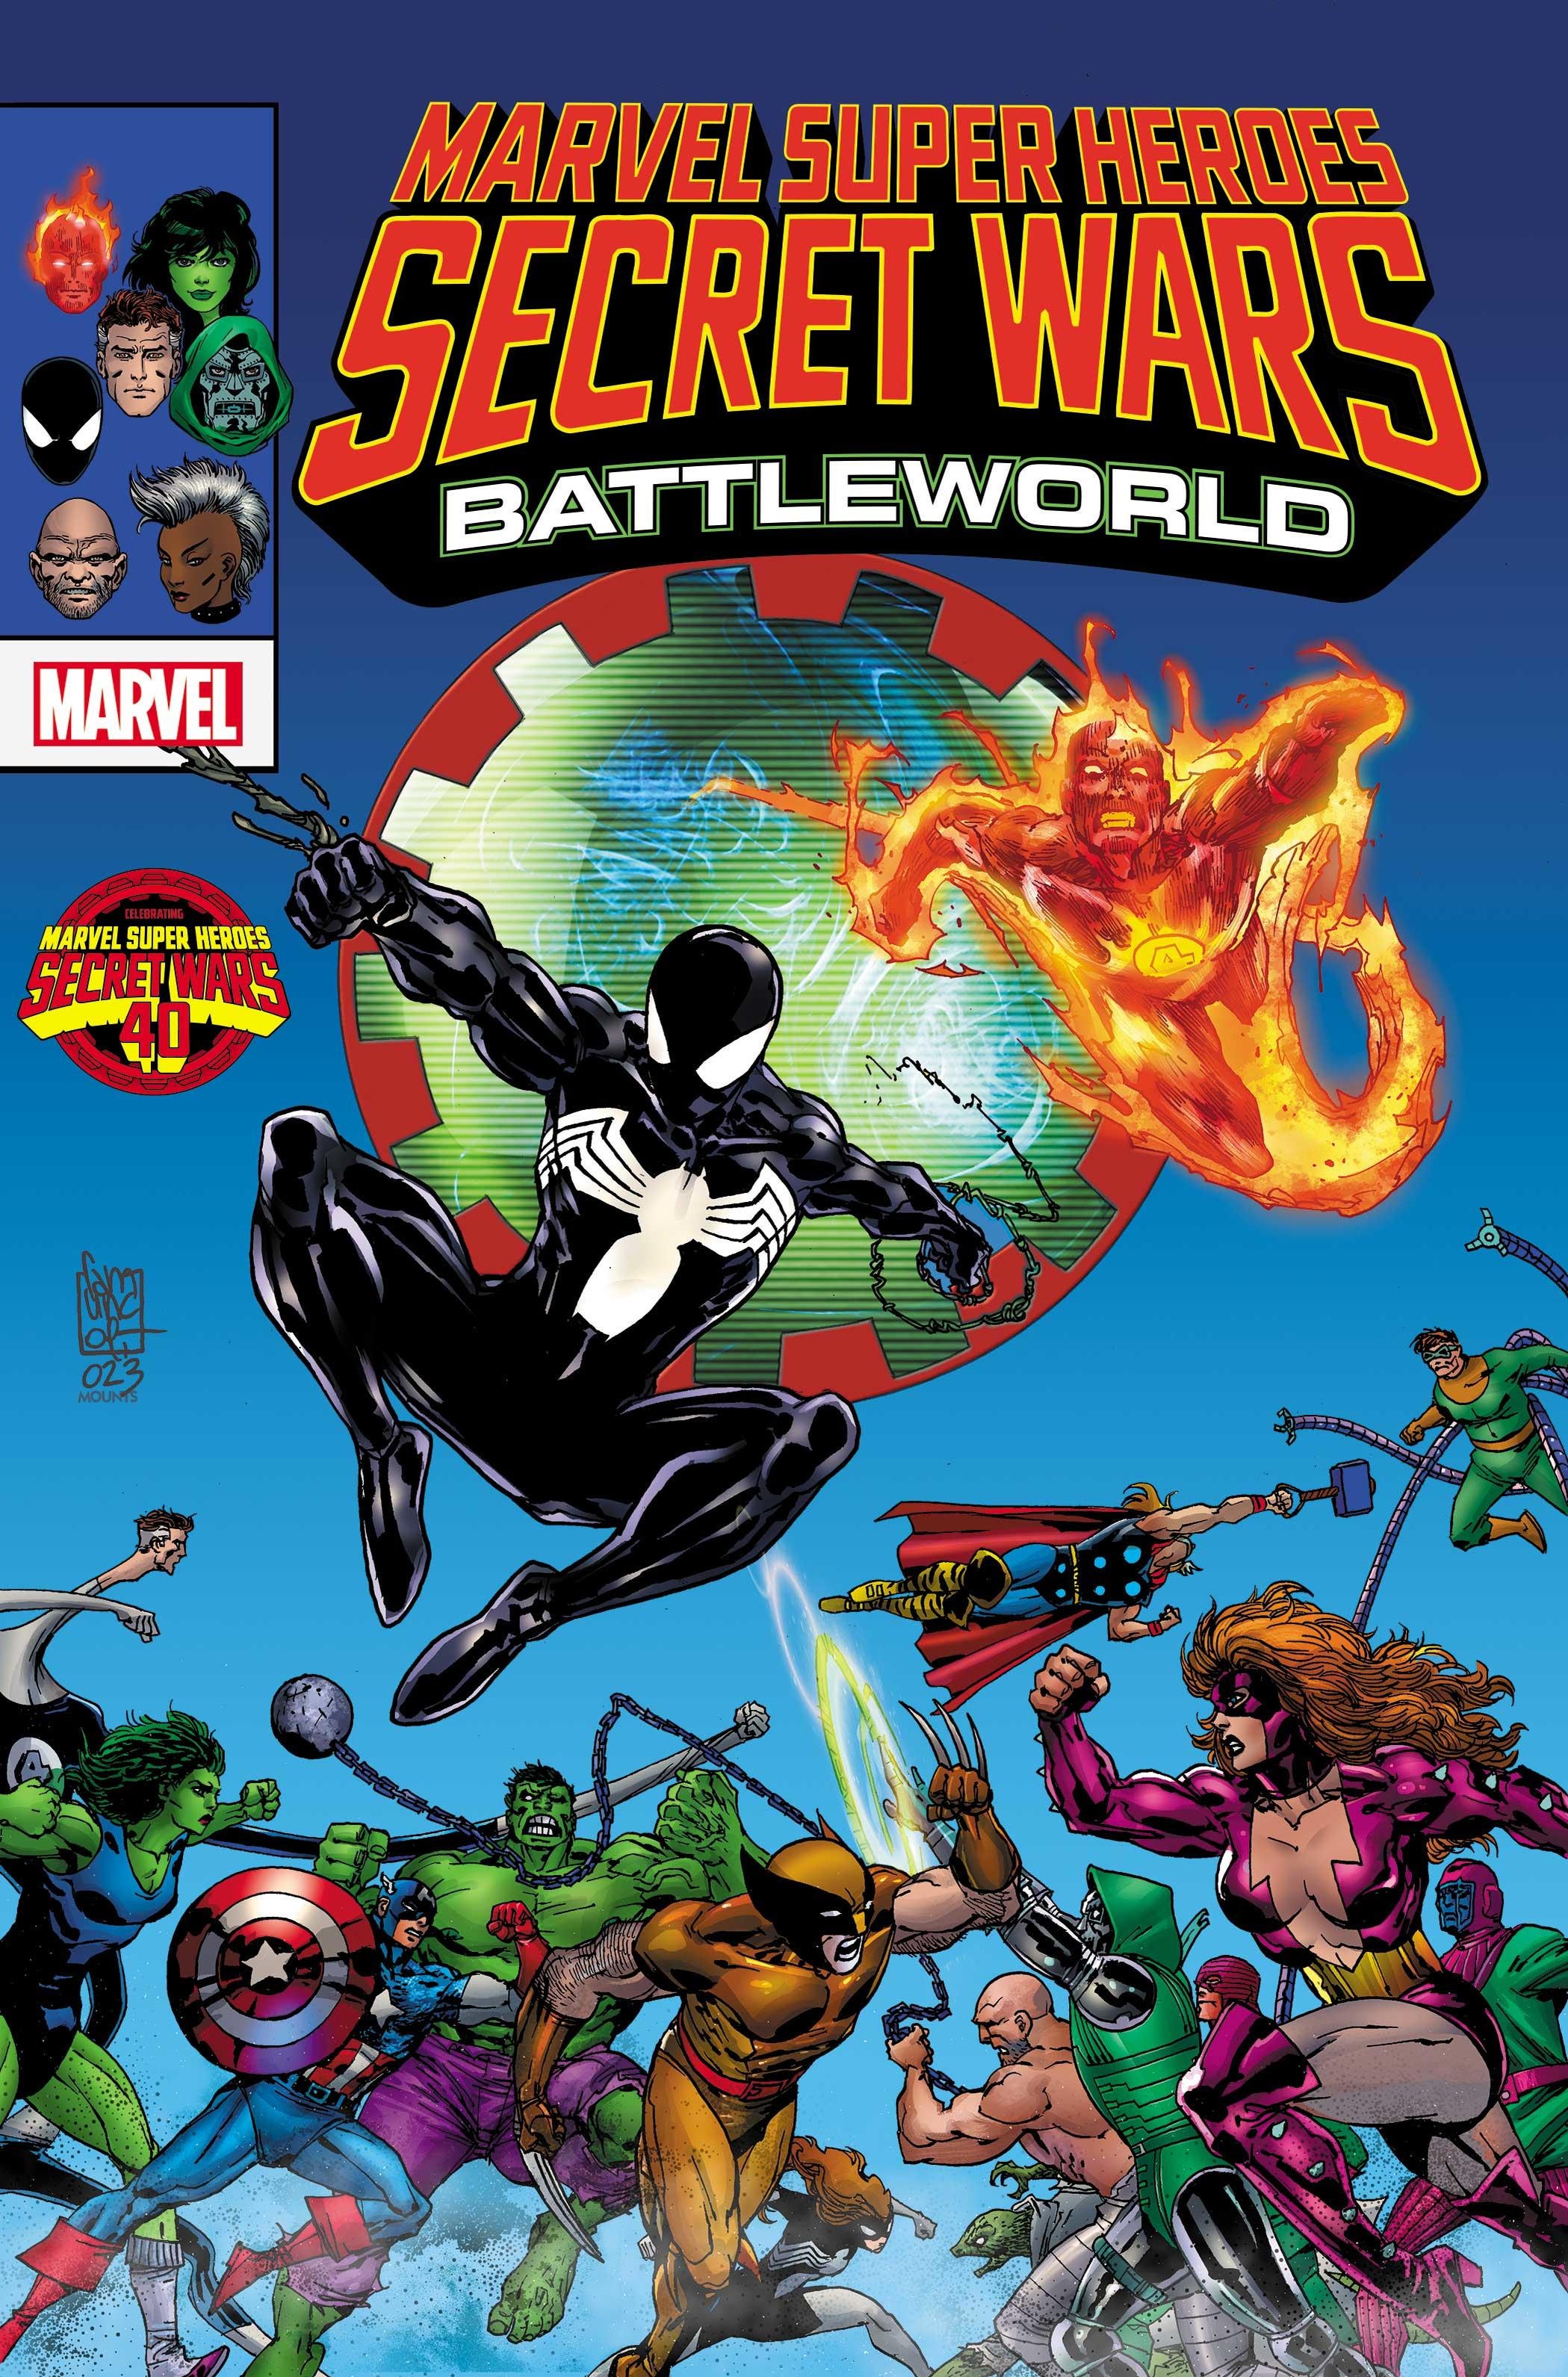 marvel-super-heroes-secret-wars-battleworld-cover.jpg